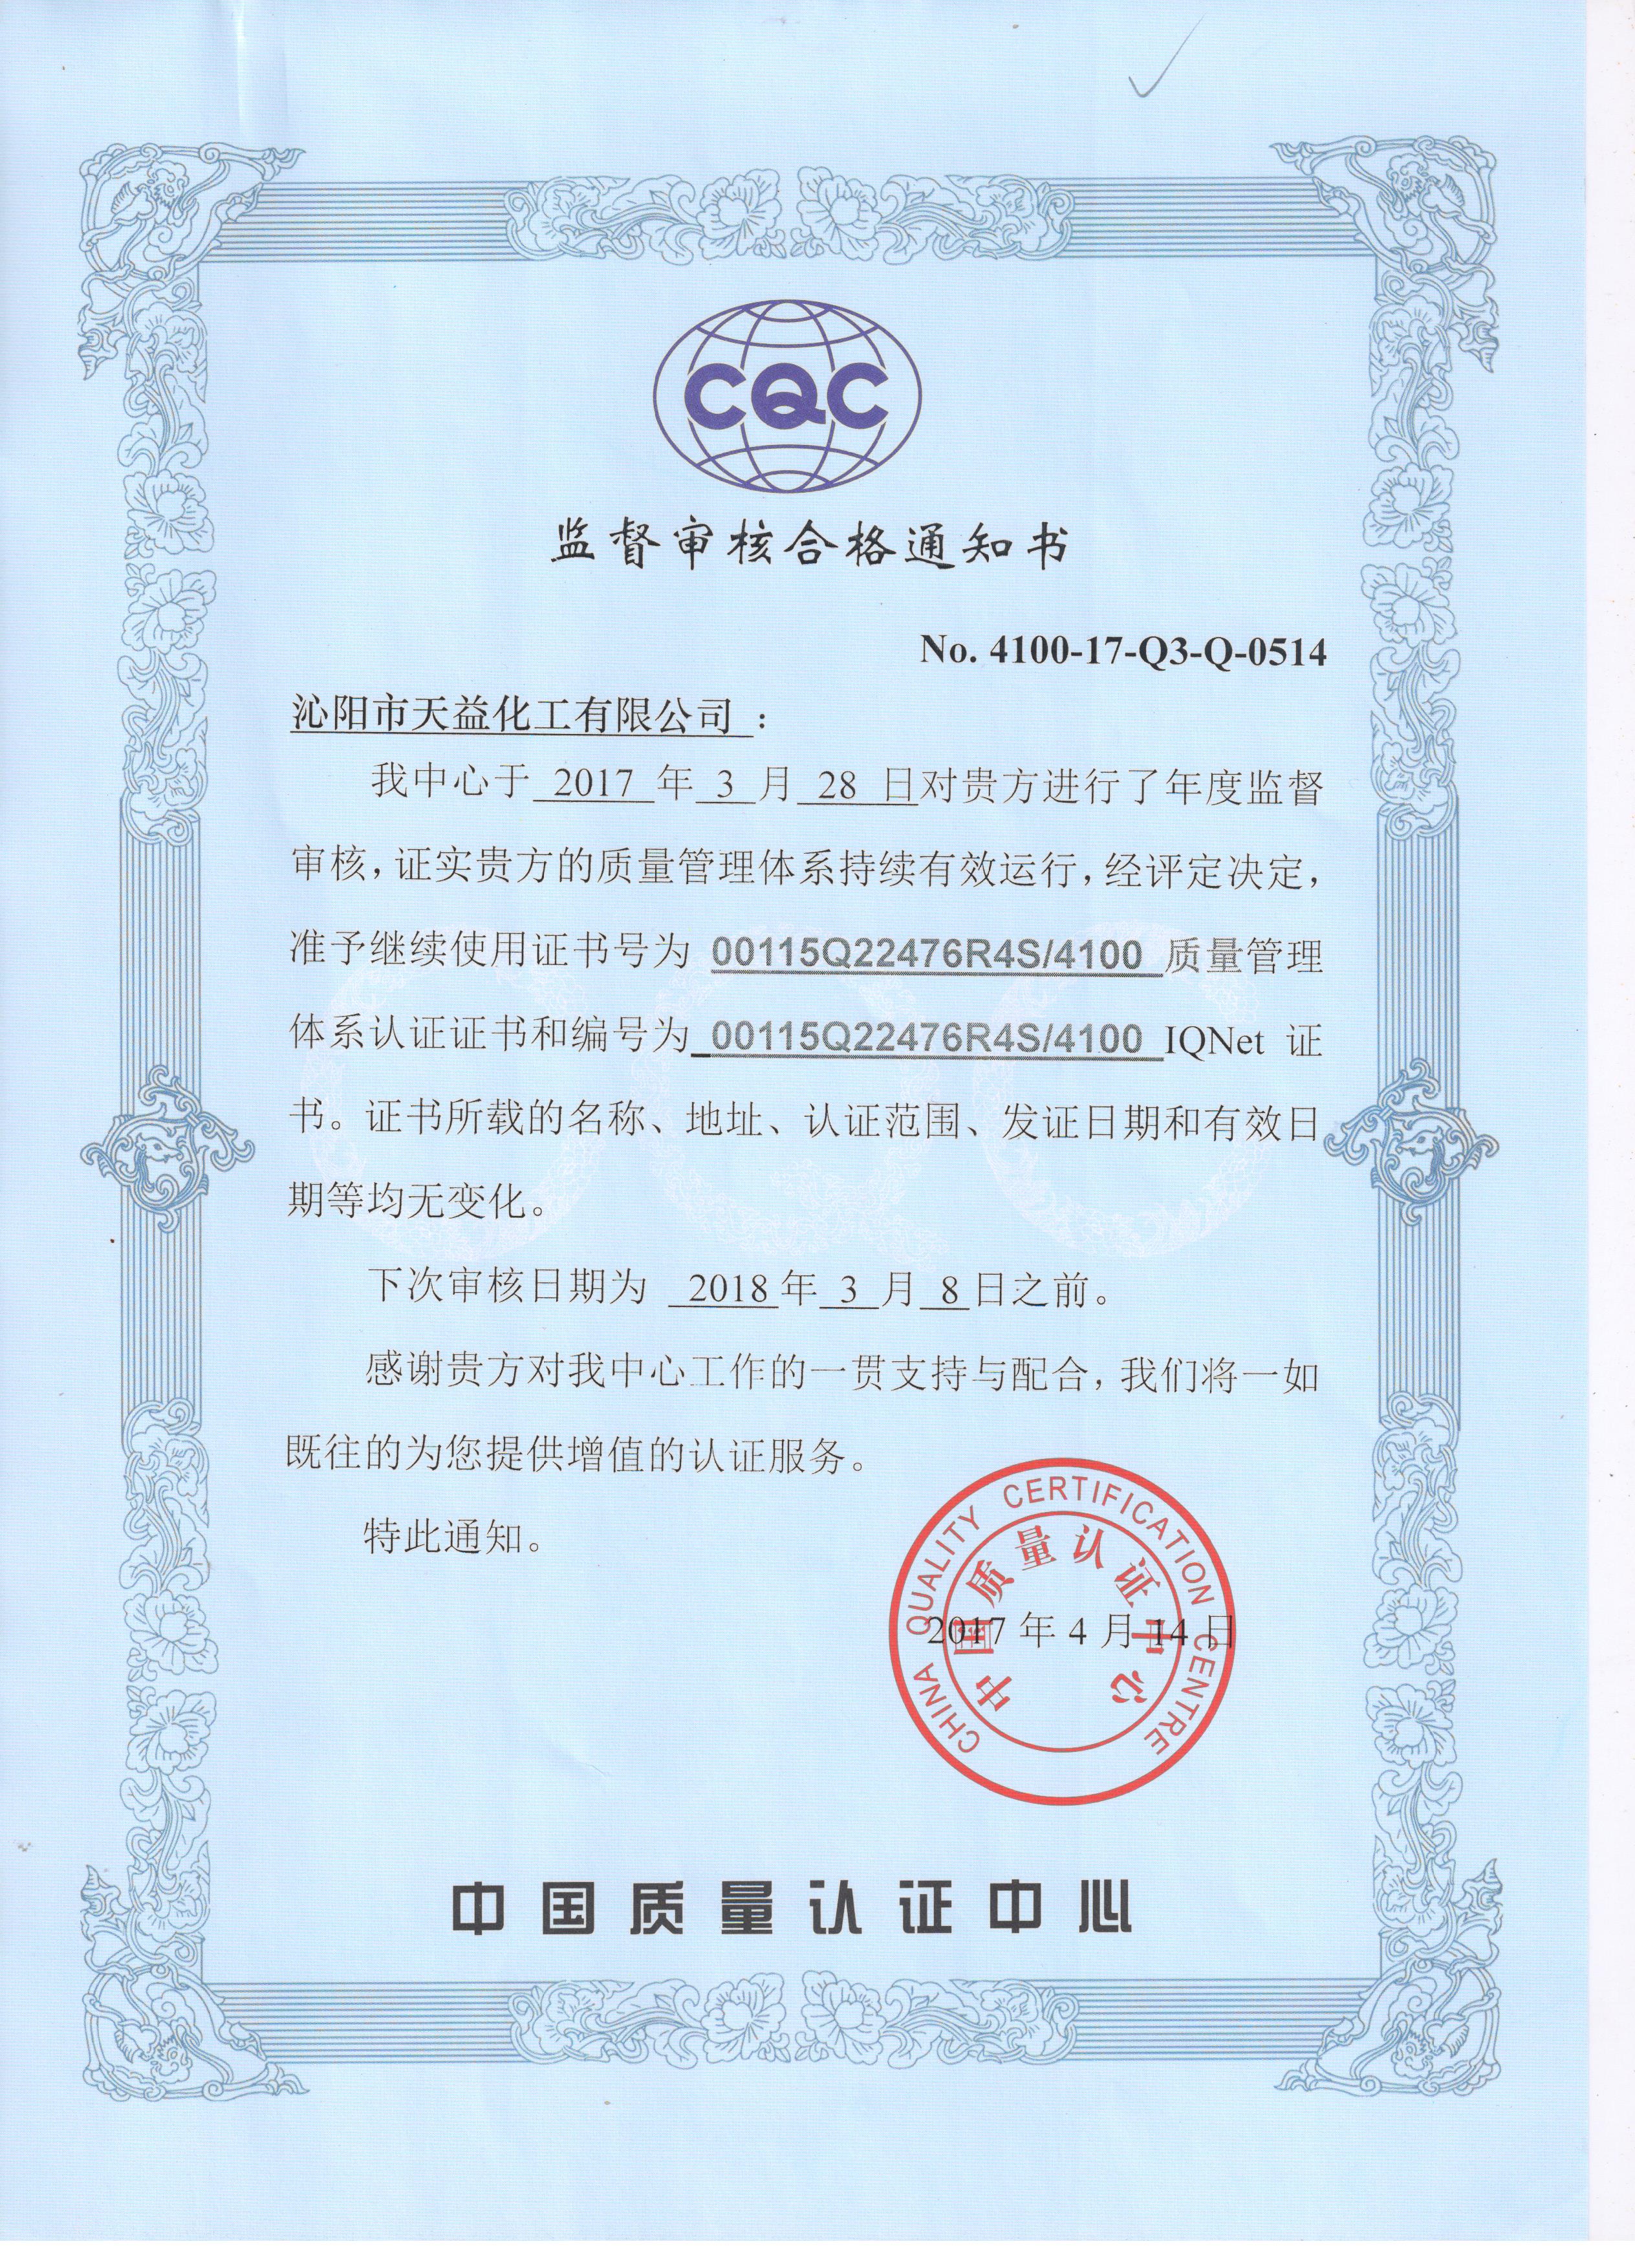 我公司顺利通过中国质量认证***年度监督审核